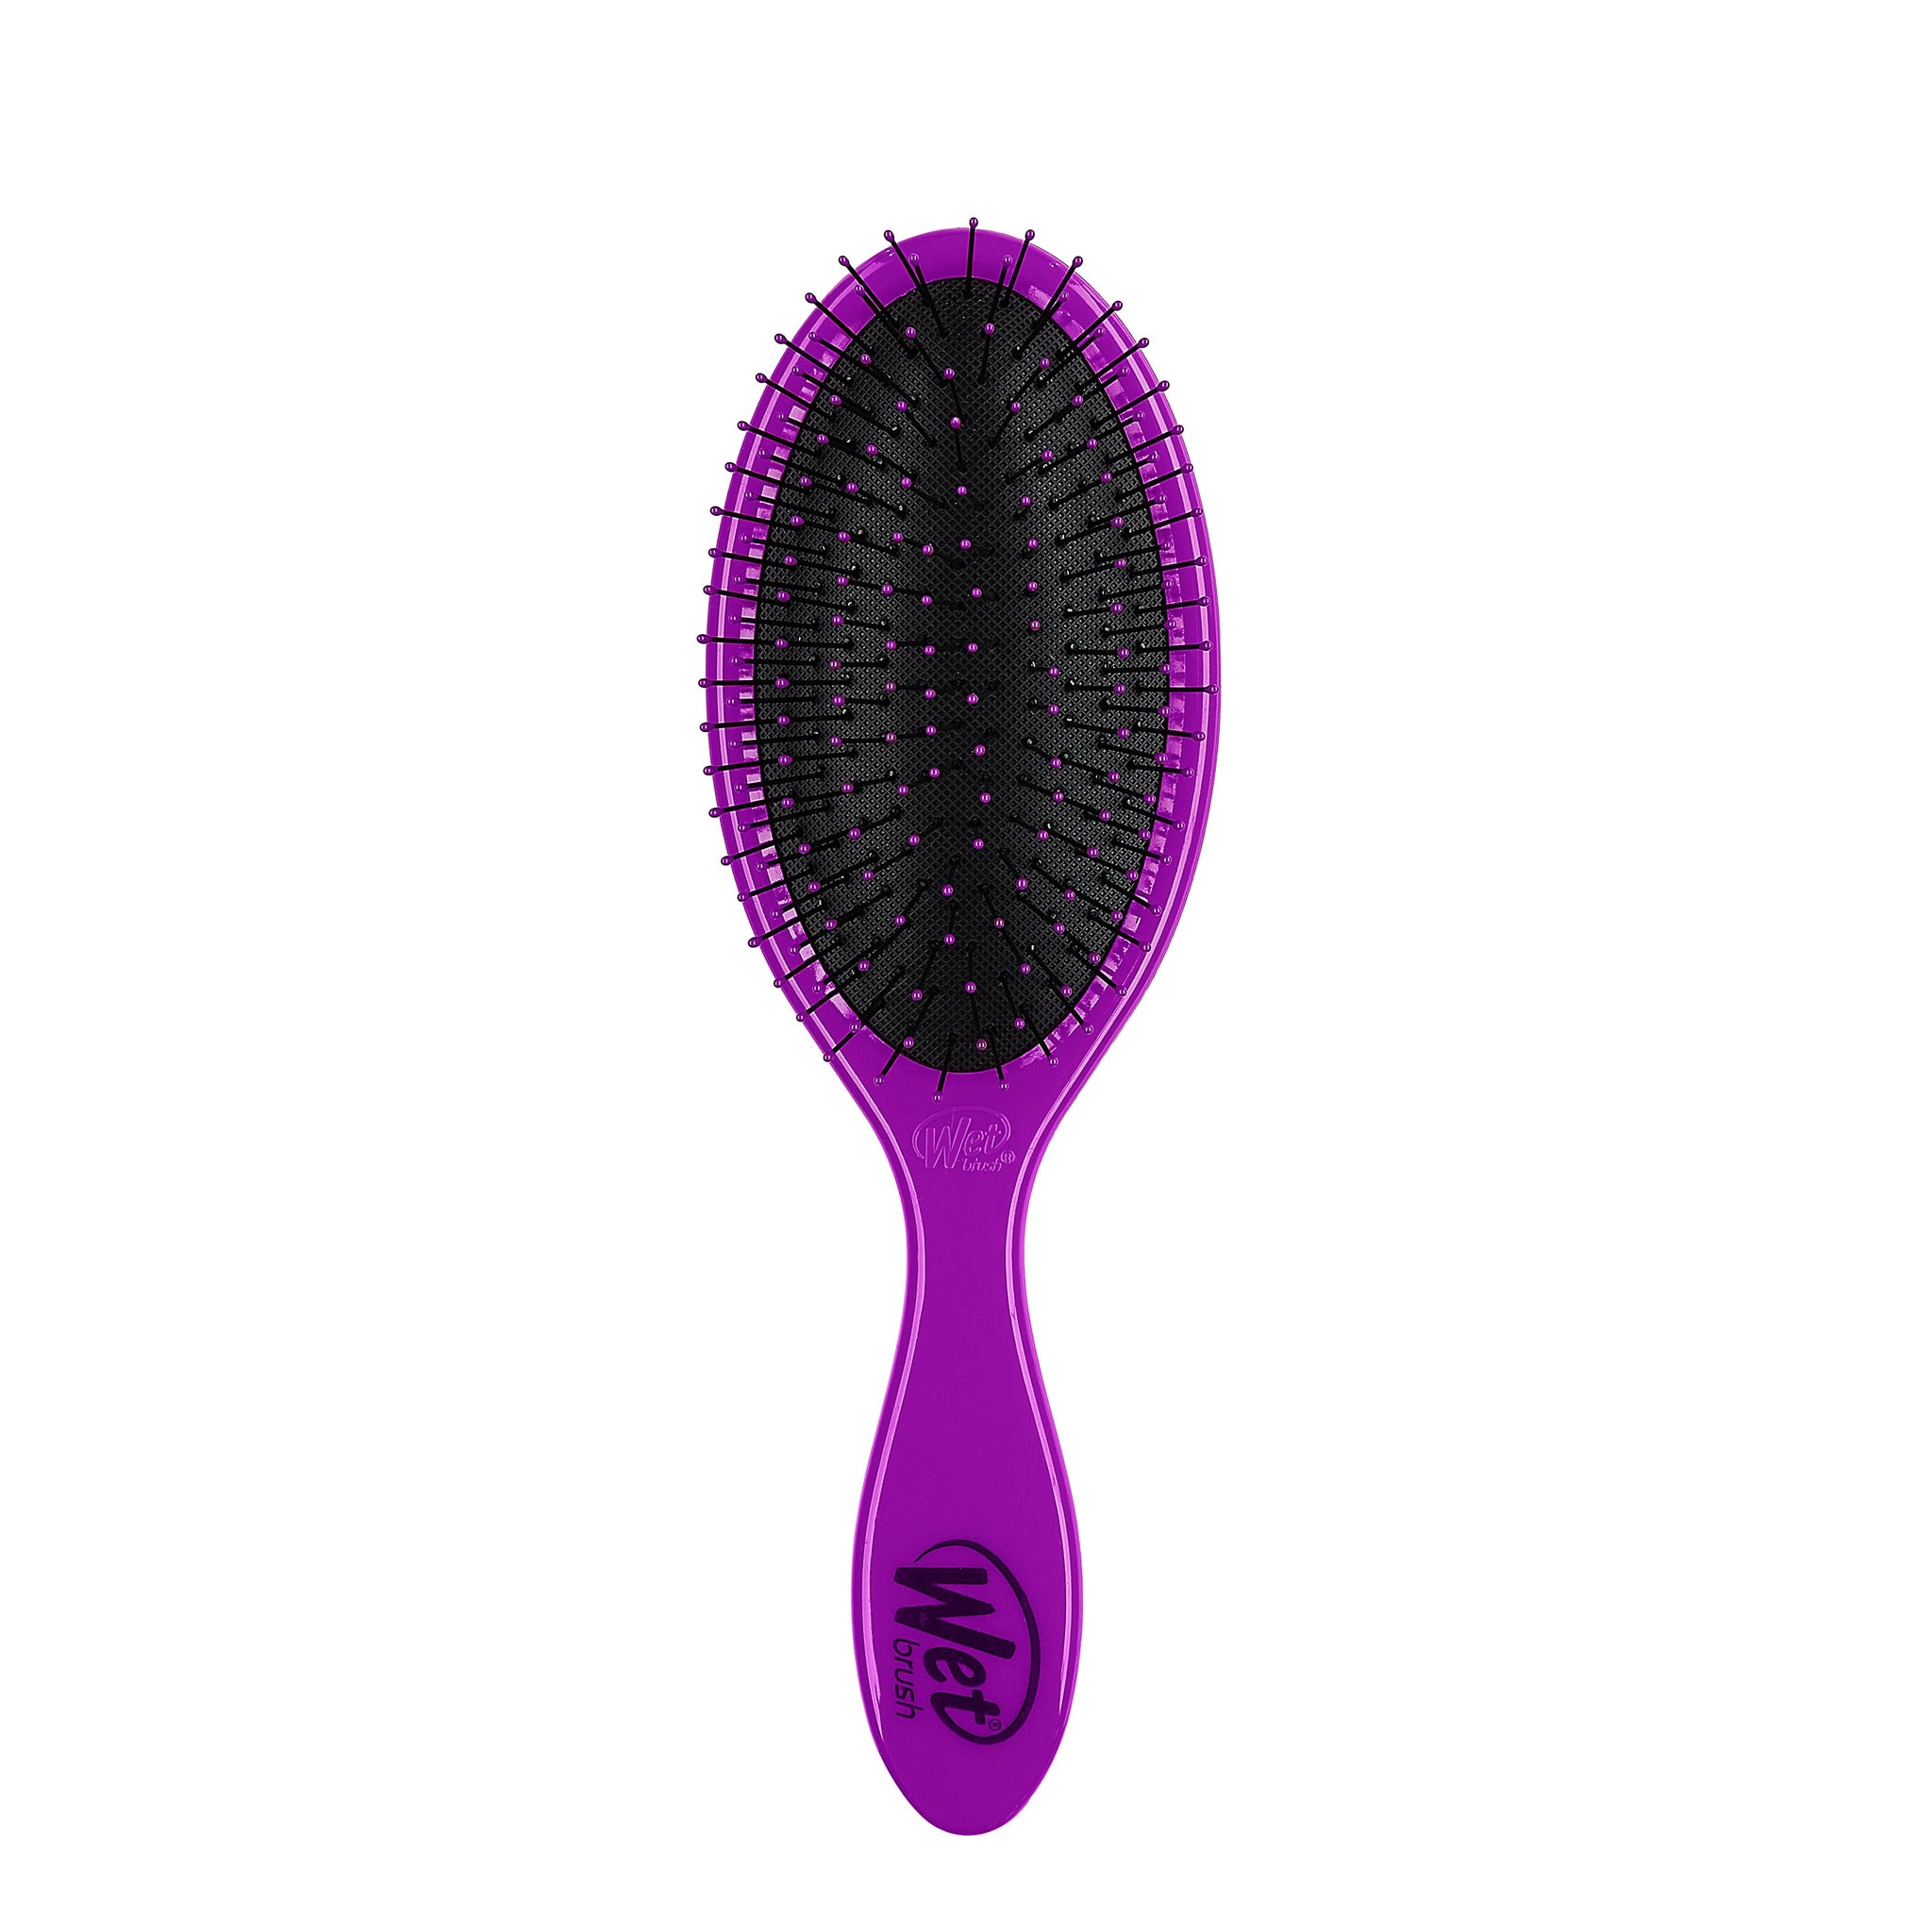 This brush for wet hair made detangling hair easier